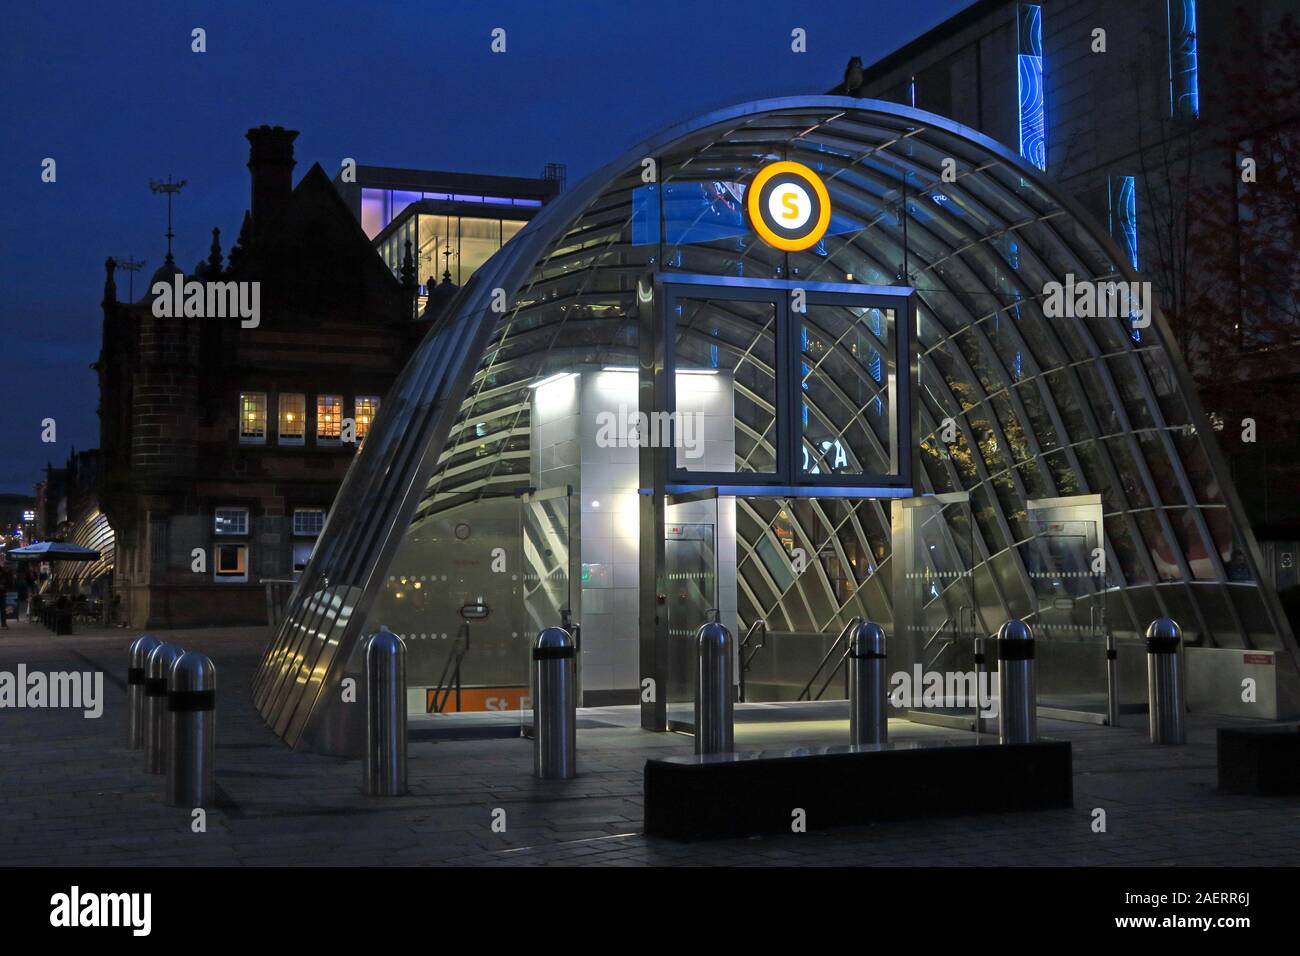 St Enoch, Subway, SPT, canopías de vidrio, Glasgow, Escocia, Reino Unido Foto de stock